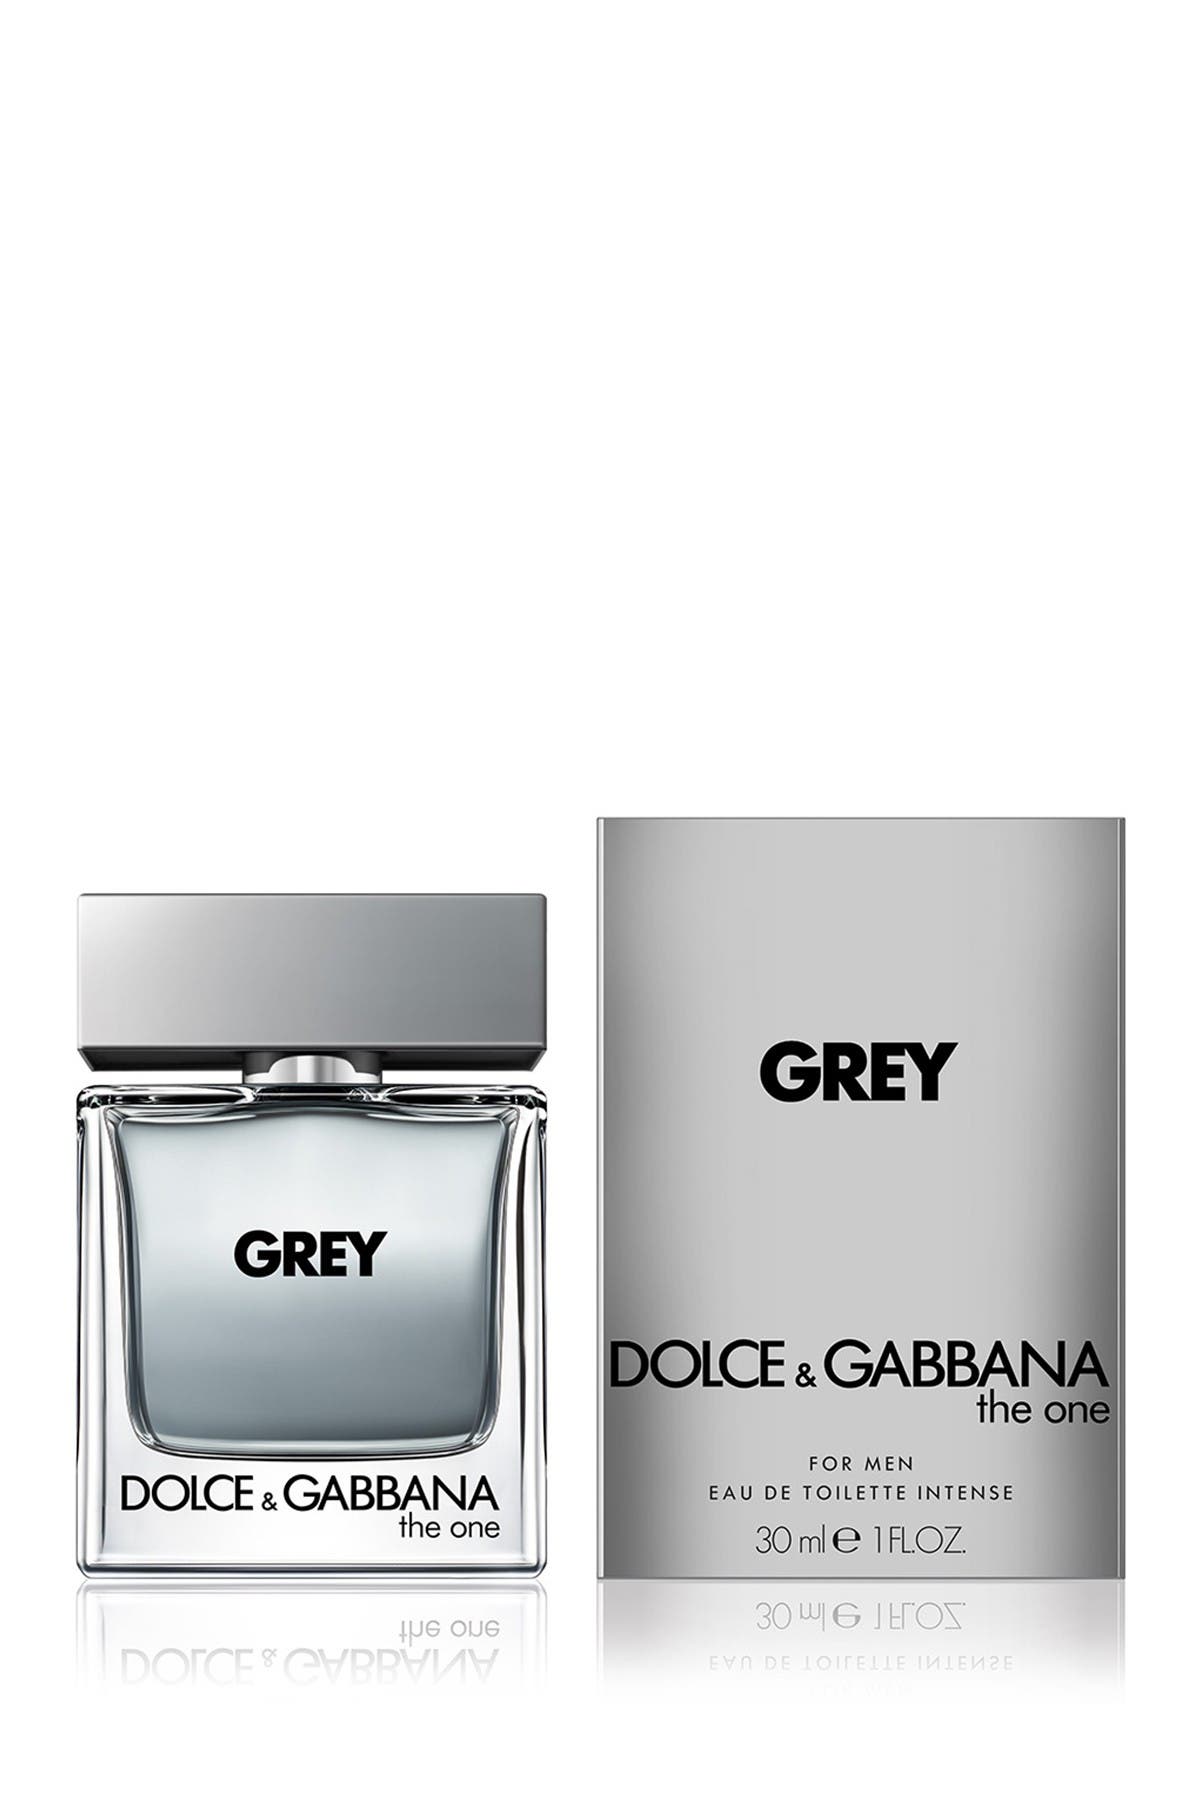 grey the one dolce gabbana